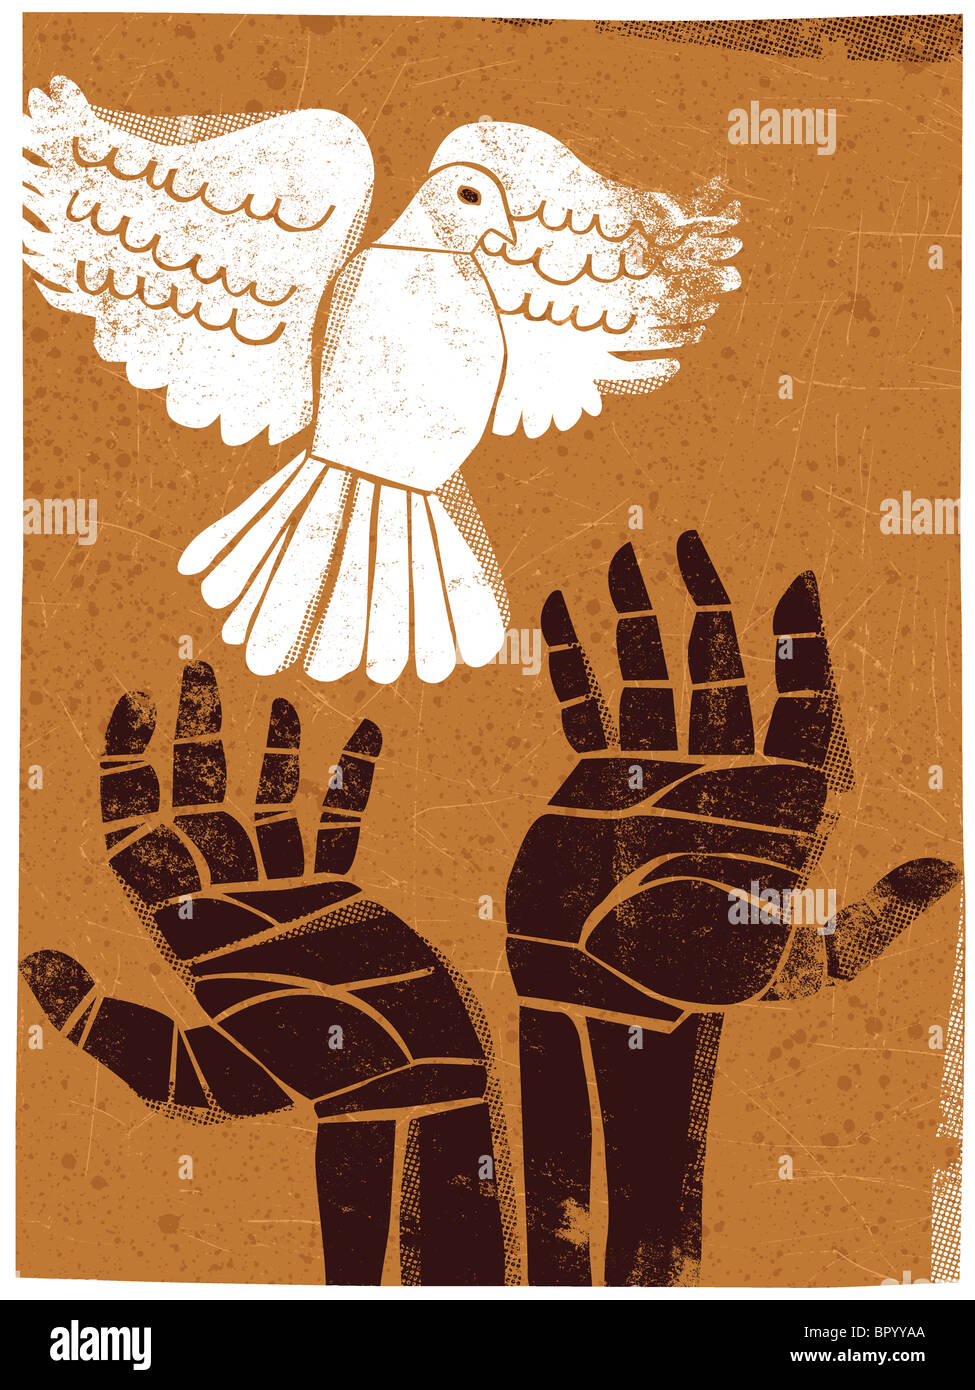 Illustration de mains la libération d'une colombe Banque D'Images